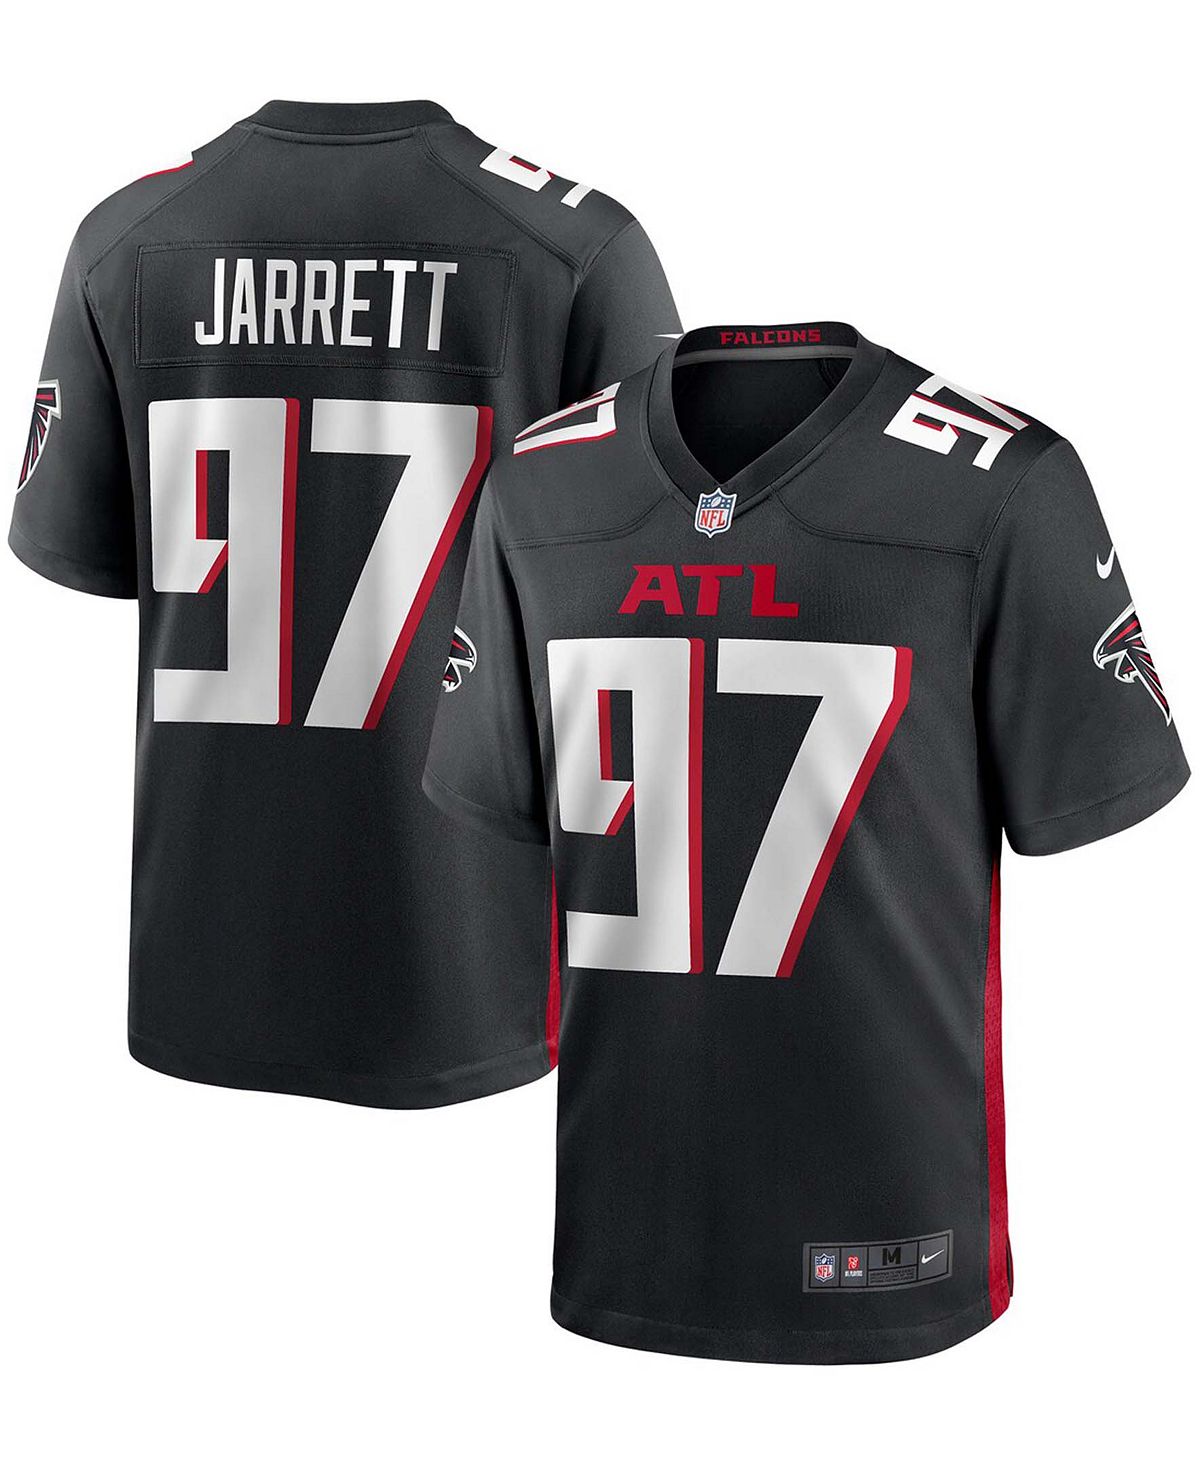 Мужская футболка grady jarrett black atlanta falcons game jersey Nike, черный фотографии